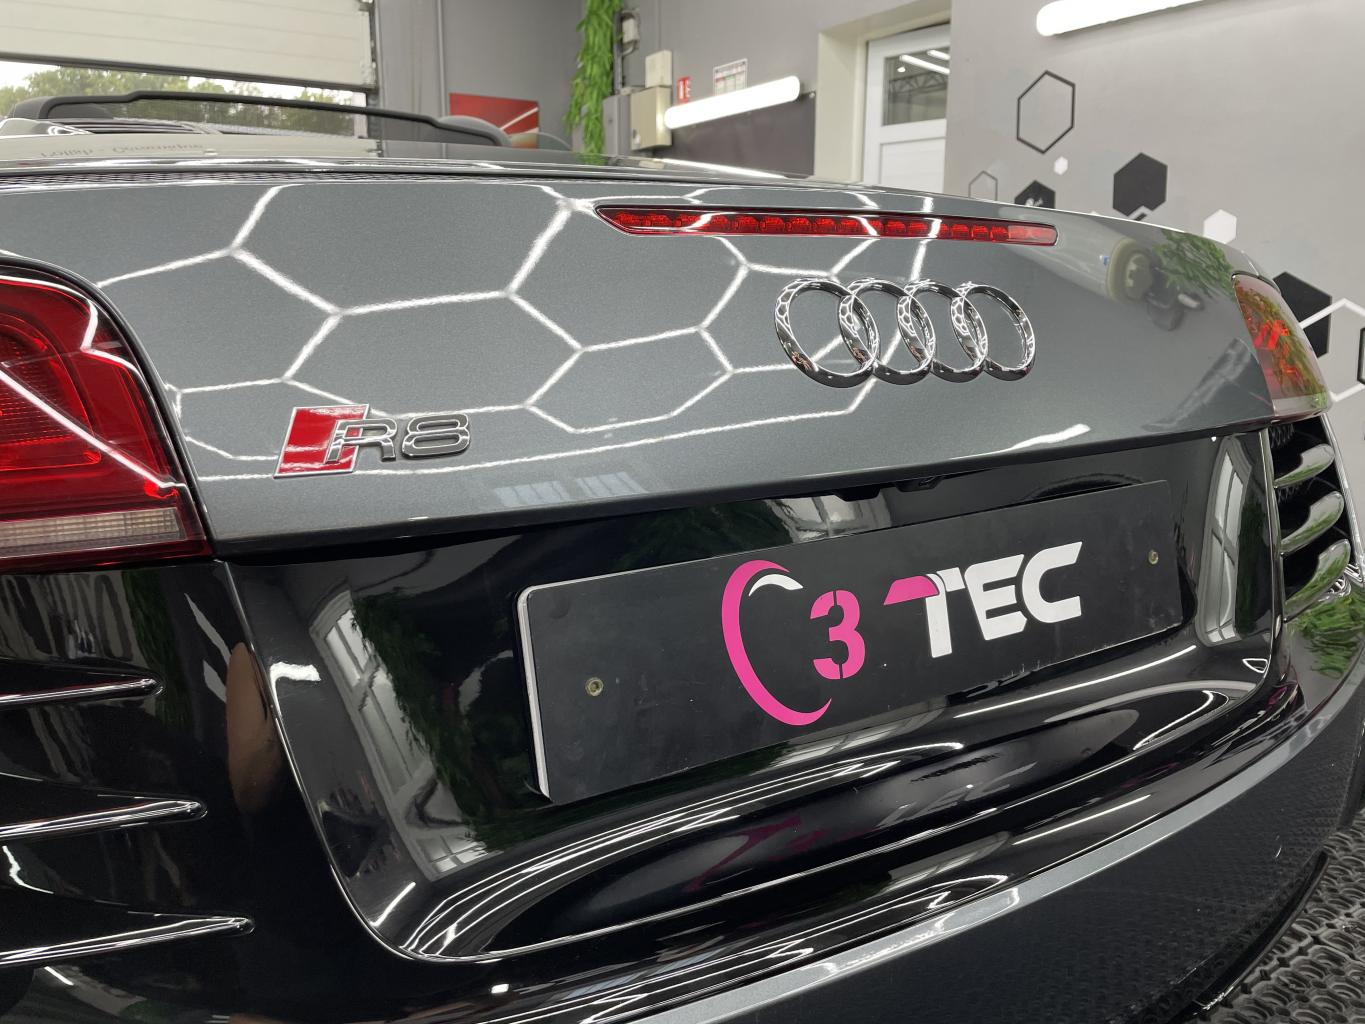 Traitement céramique Gtechniq Crystal Sérum Ultra garantie 9 ans, traitement de capote et traitement céramique des jantes sur une Audi R8 Spyder